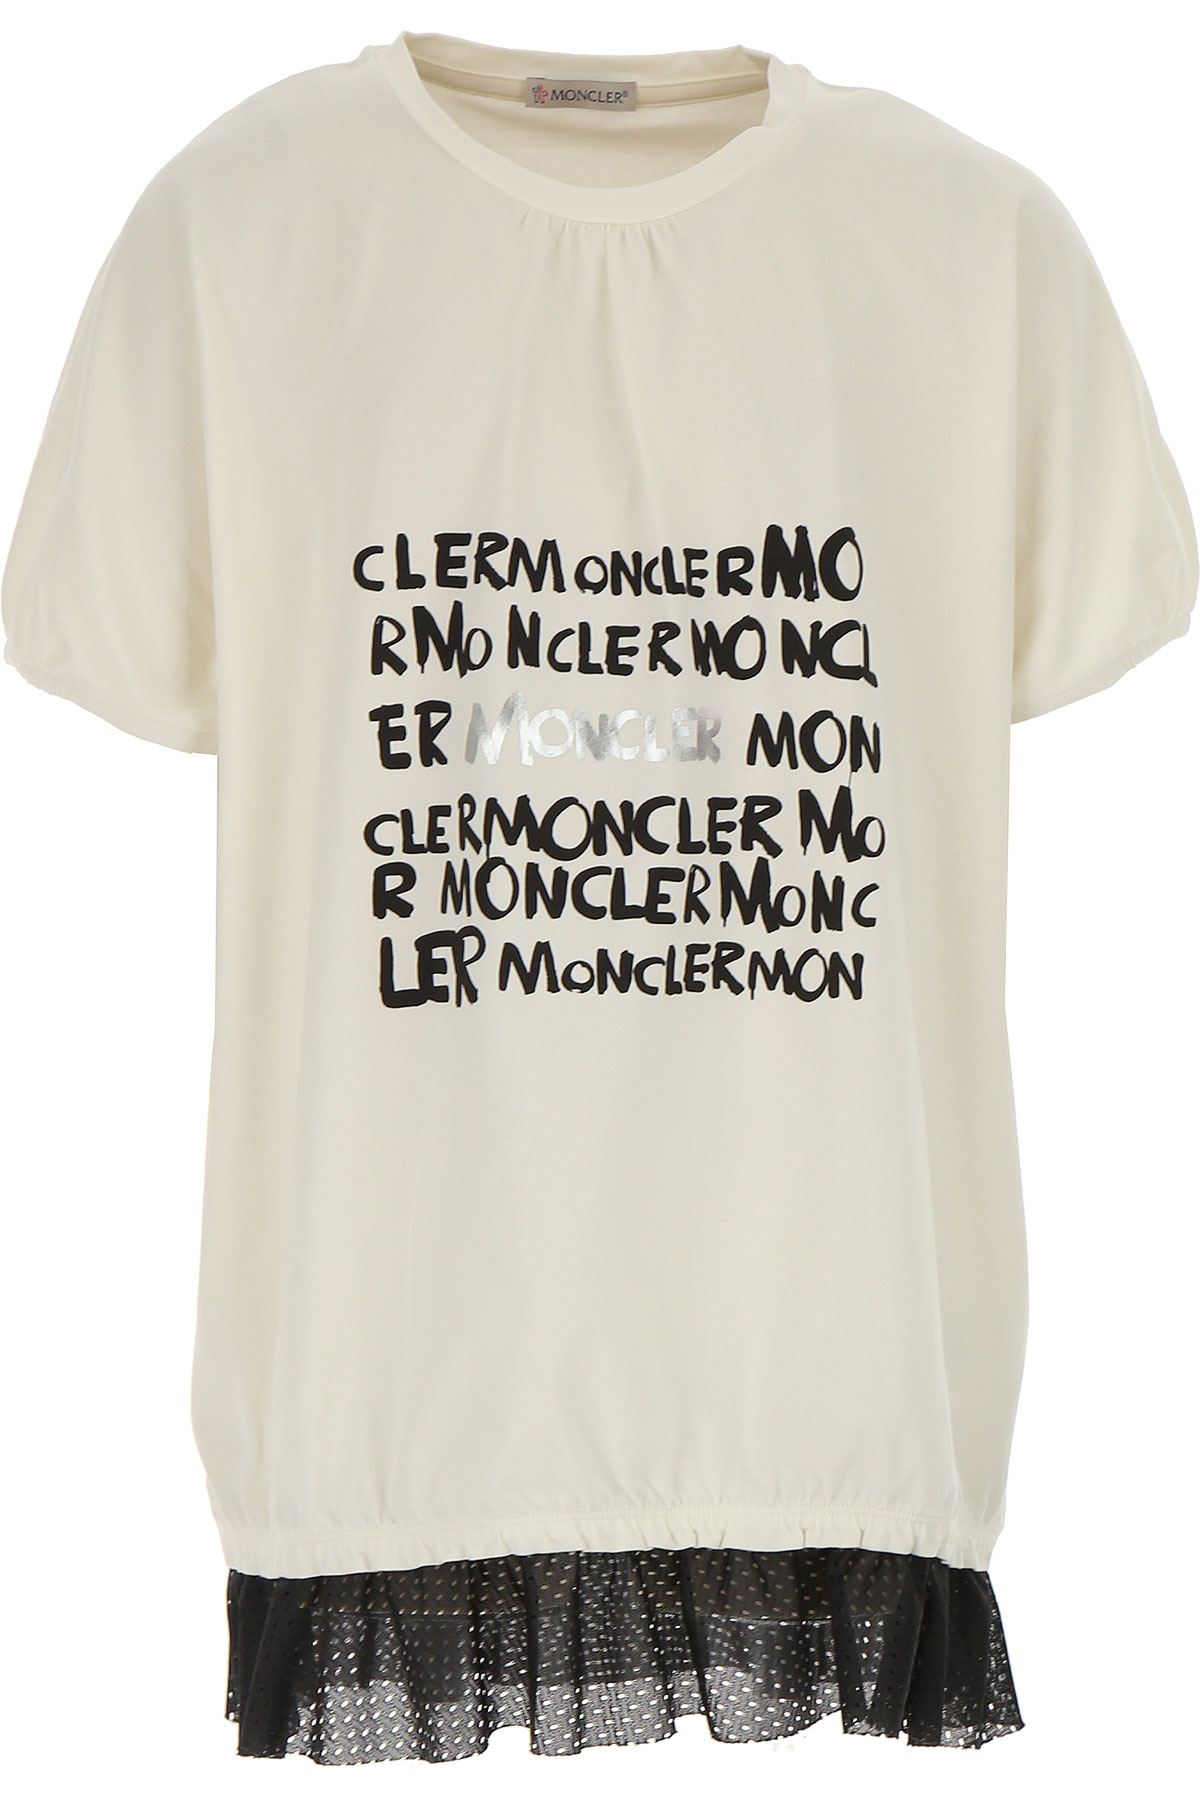 Moncler Kinder T-Shirt für Mädchen Günstig im Outlet Sale, Milchfarben, Baumwolle, 2017, 10Y 8Y